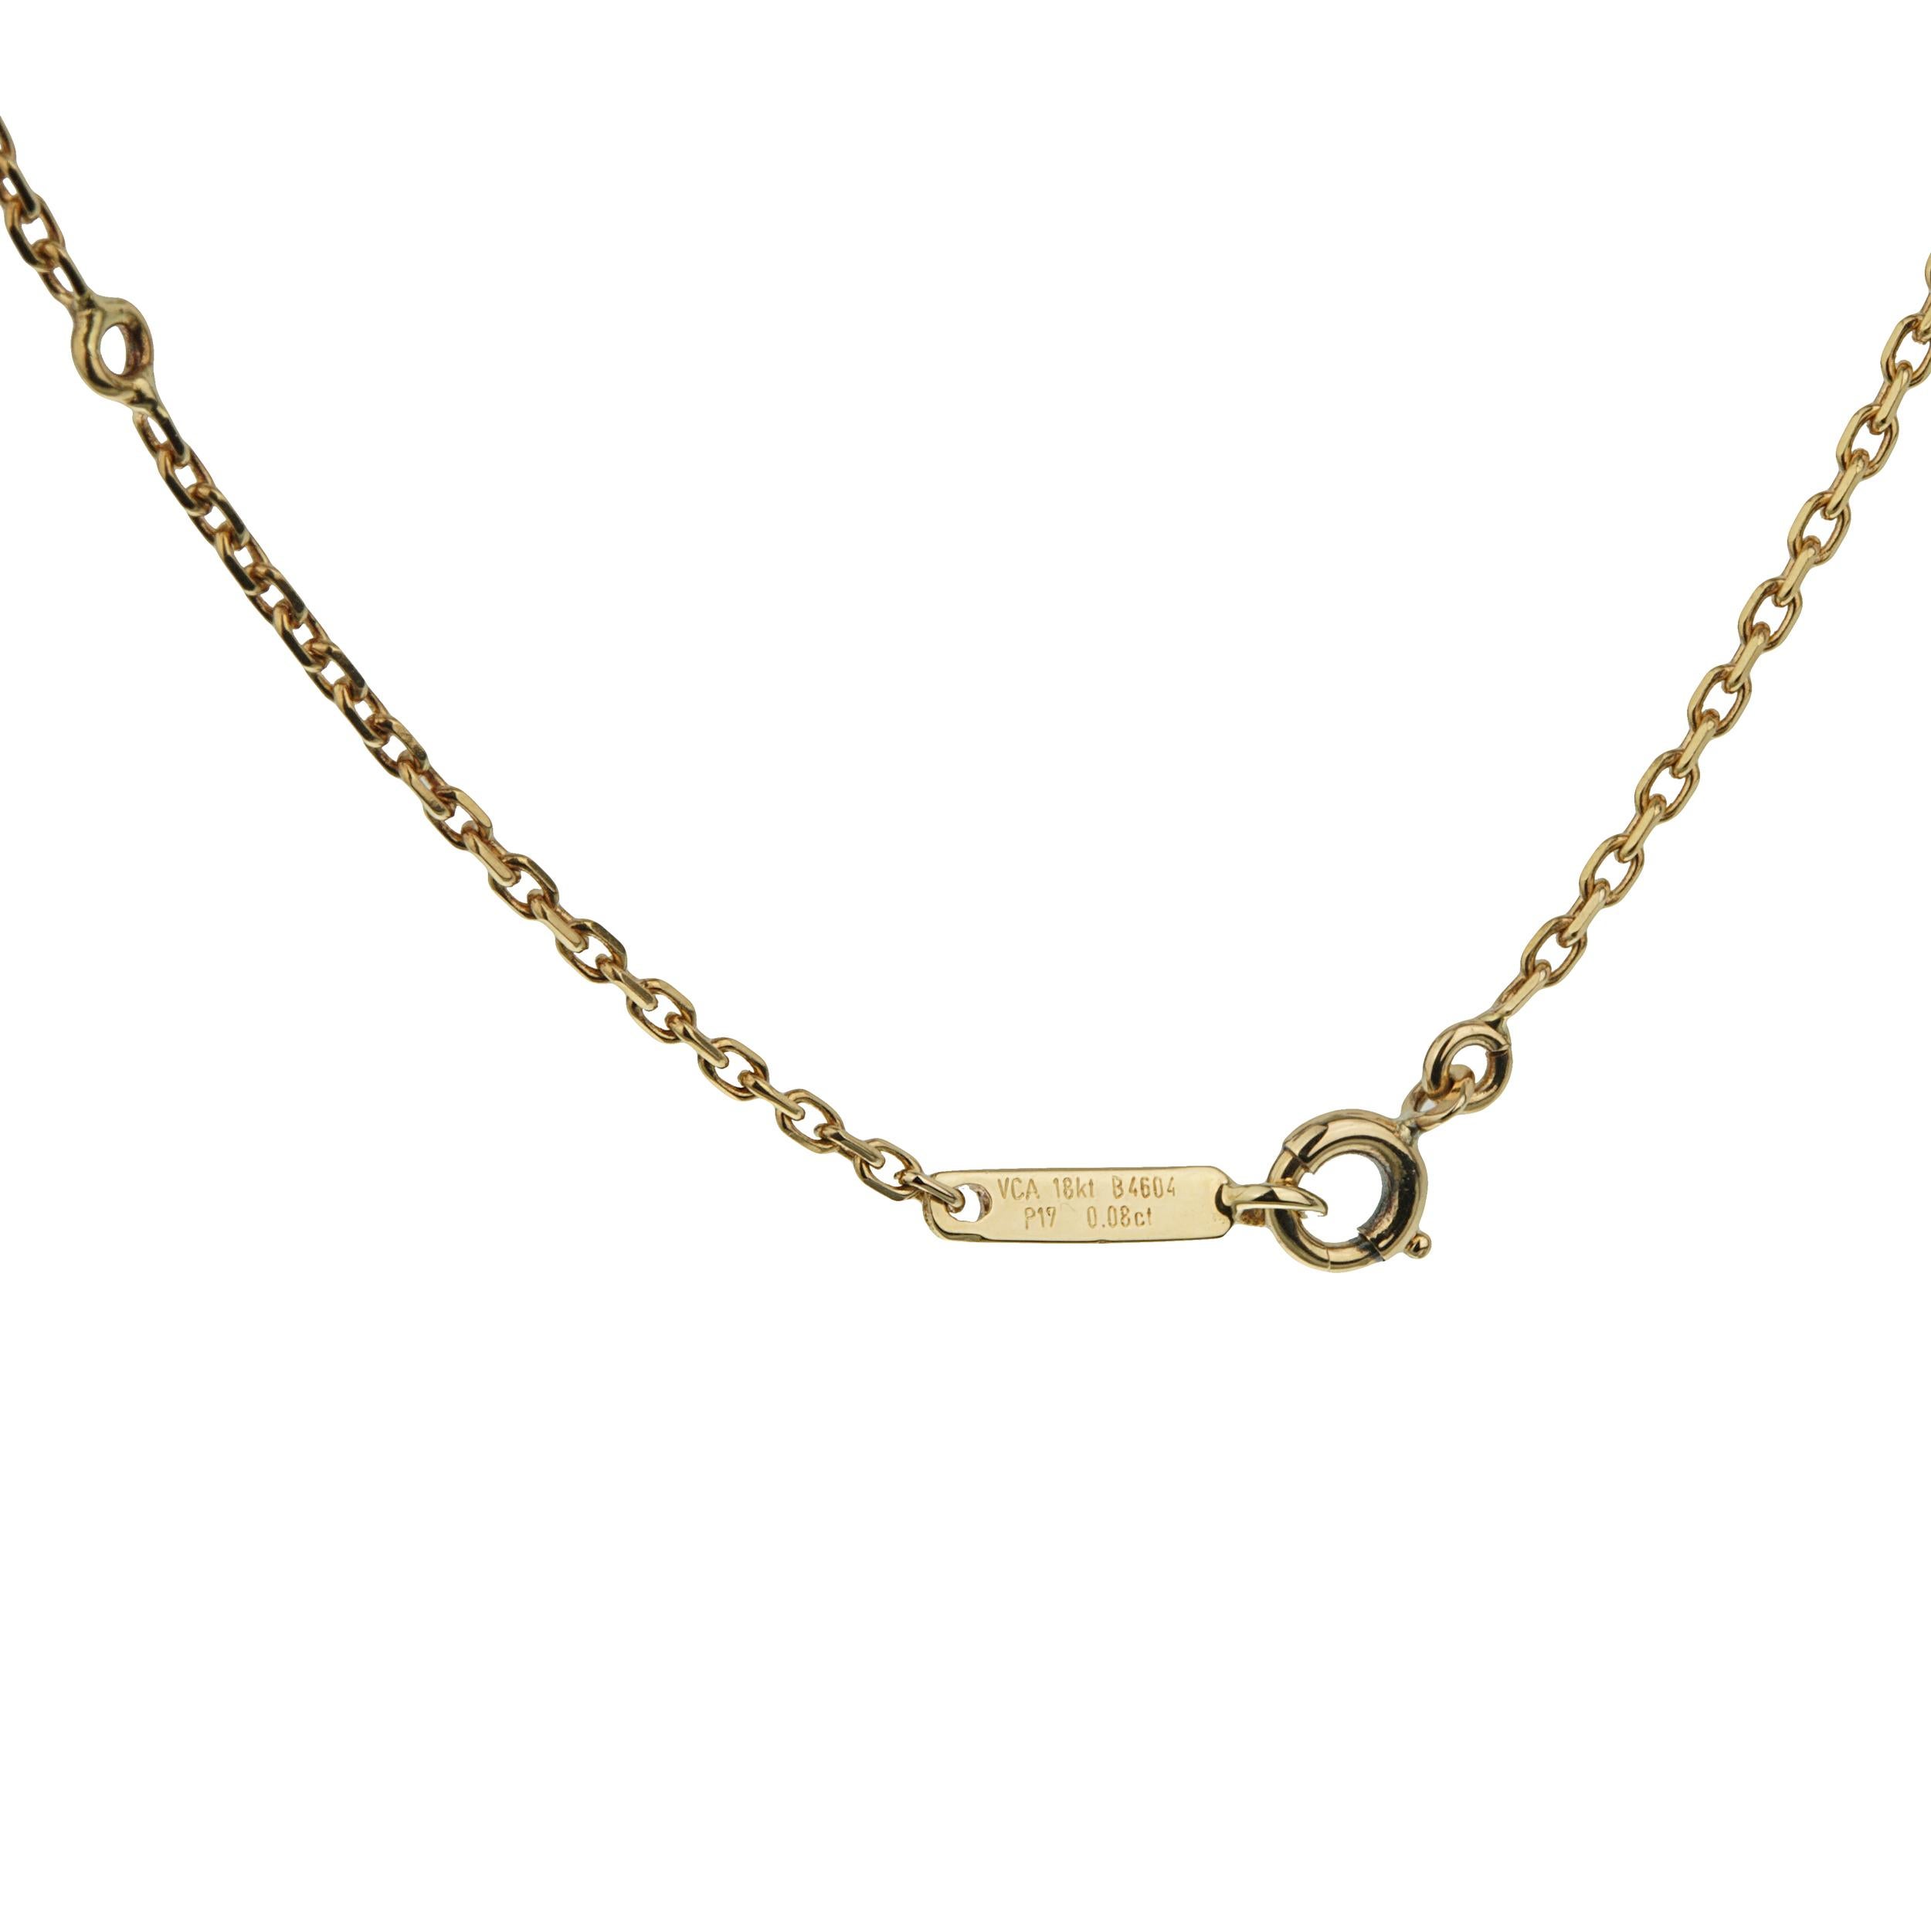 Centré autour d'une perle lustrée, ce collier enchanteur présente un nœud méticuleusement travaillé, orné de diamants ronds étincelants qui captent magnifiquement la lumière. Sertis en or jaune 18 carats, le nœud et la chaîne délicate créent une